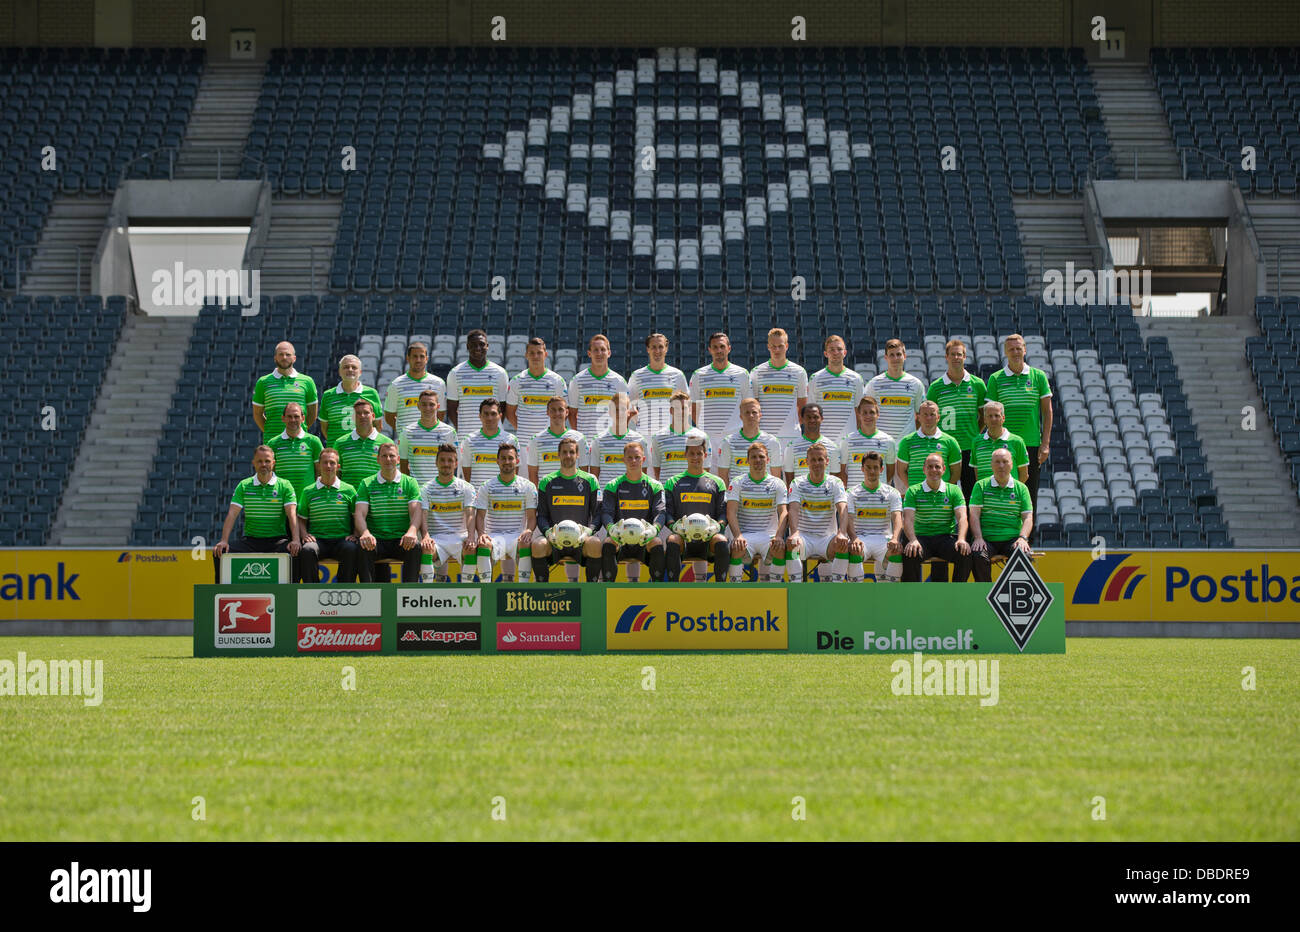 Offizielles Mannschaftsfoto des deutschen Bundesligisten Borussia  Mönchengladbach während der offiziellen Fototermin für die Saison 2013 / 14  am 9. Juli 2013 im Borussia-Park in Mönchengladbach (Nordrhein-Westfalen):  obere Zeile (l-R): Athletik-Trainer ...